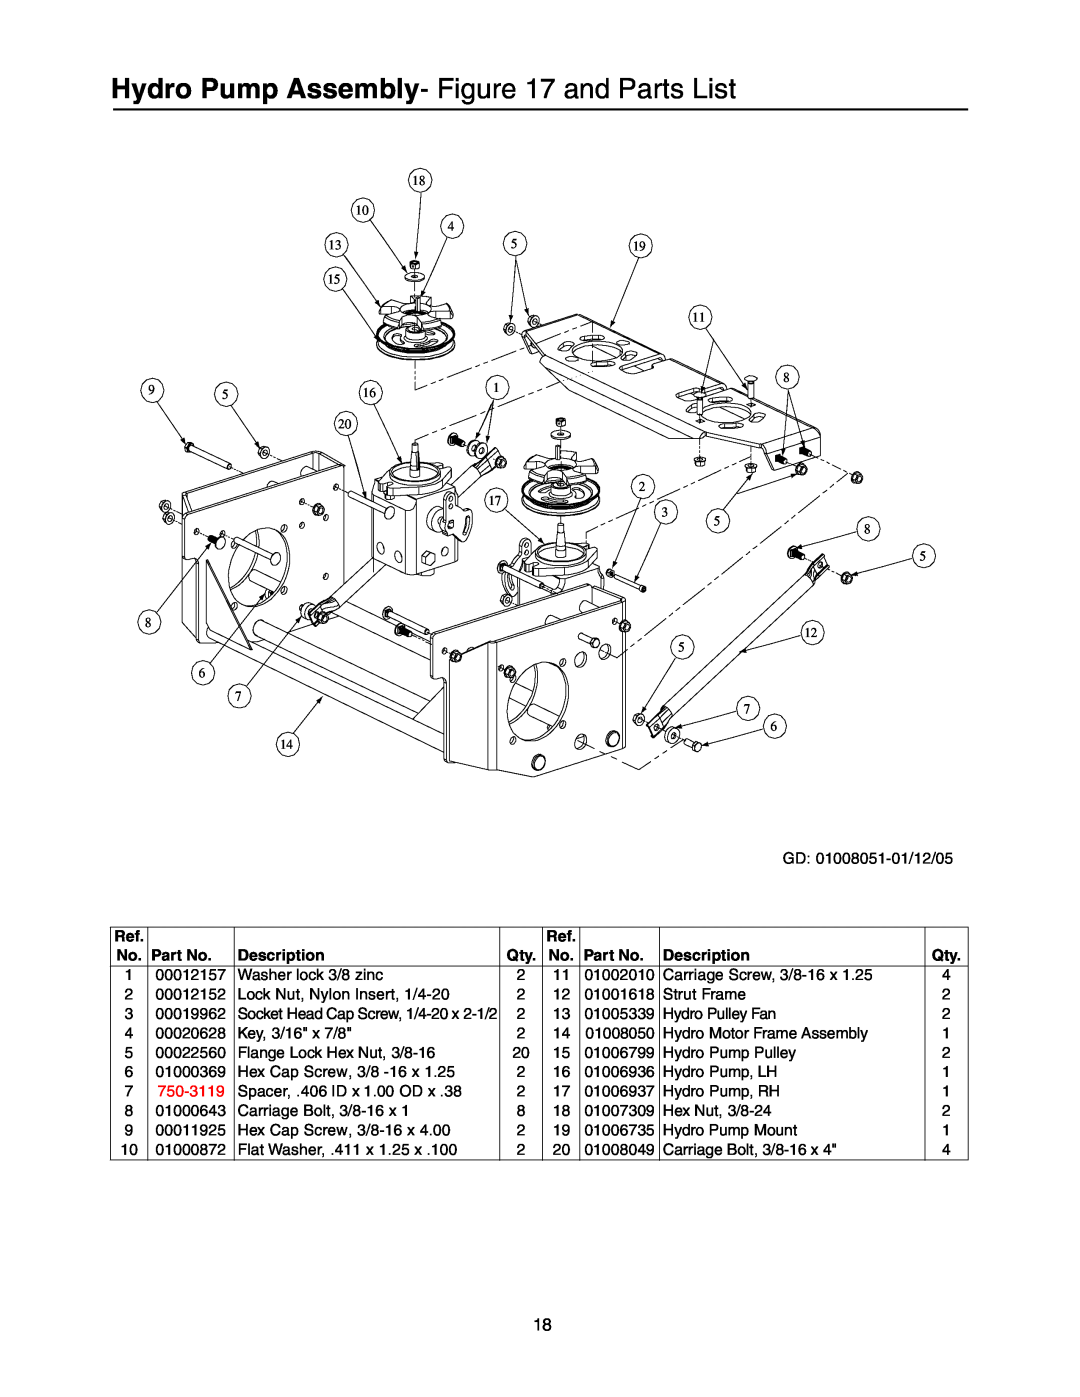 Cub Cadet Lawn Mower manual Hydro Pump Assembly- and Parts List, No. Part No, Description, 750-3119 